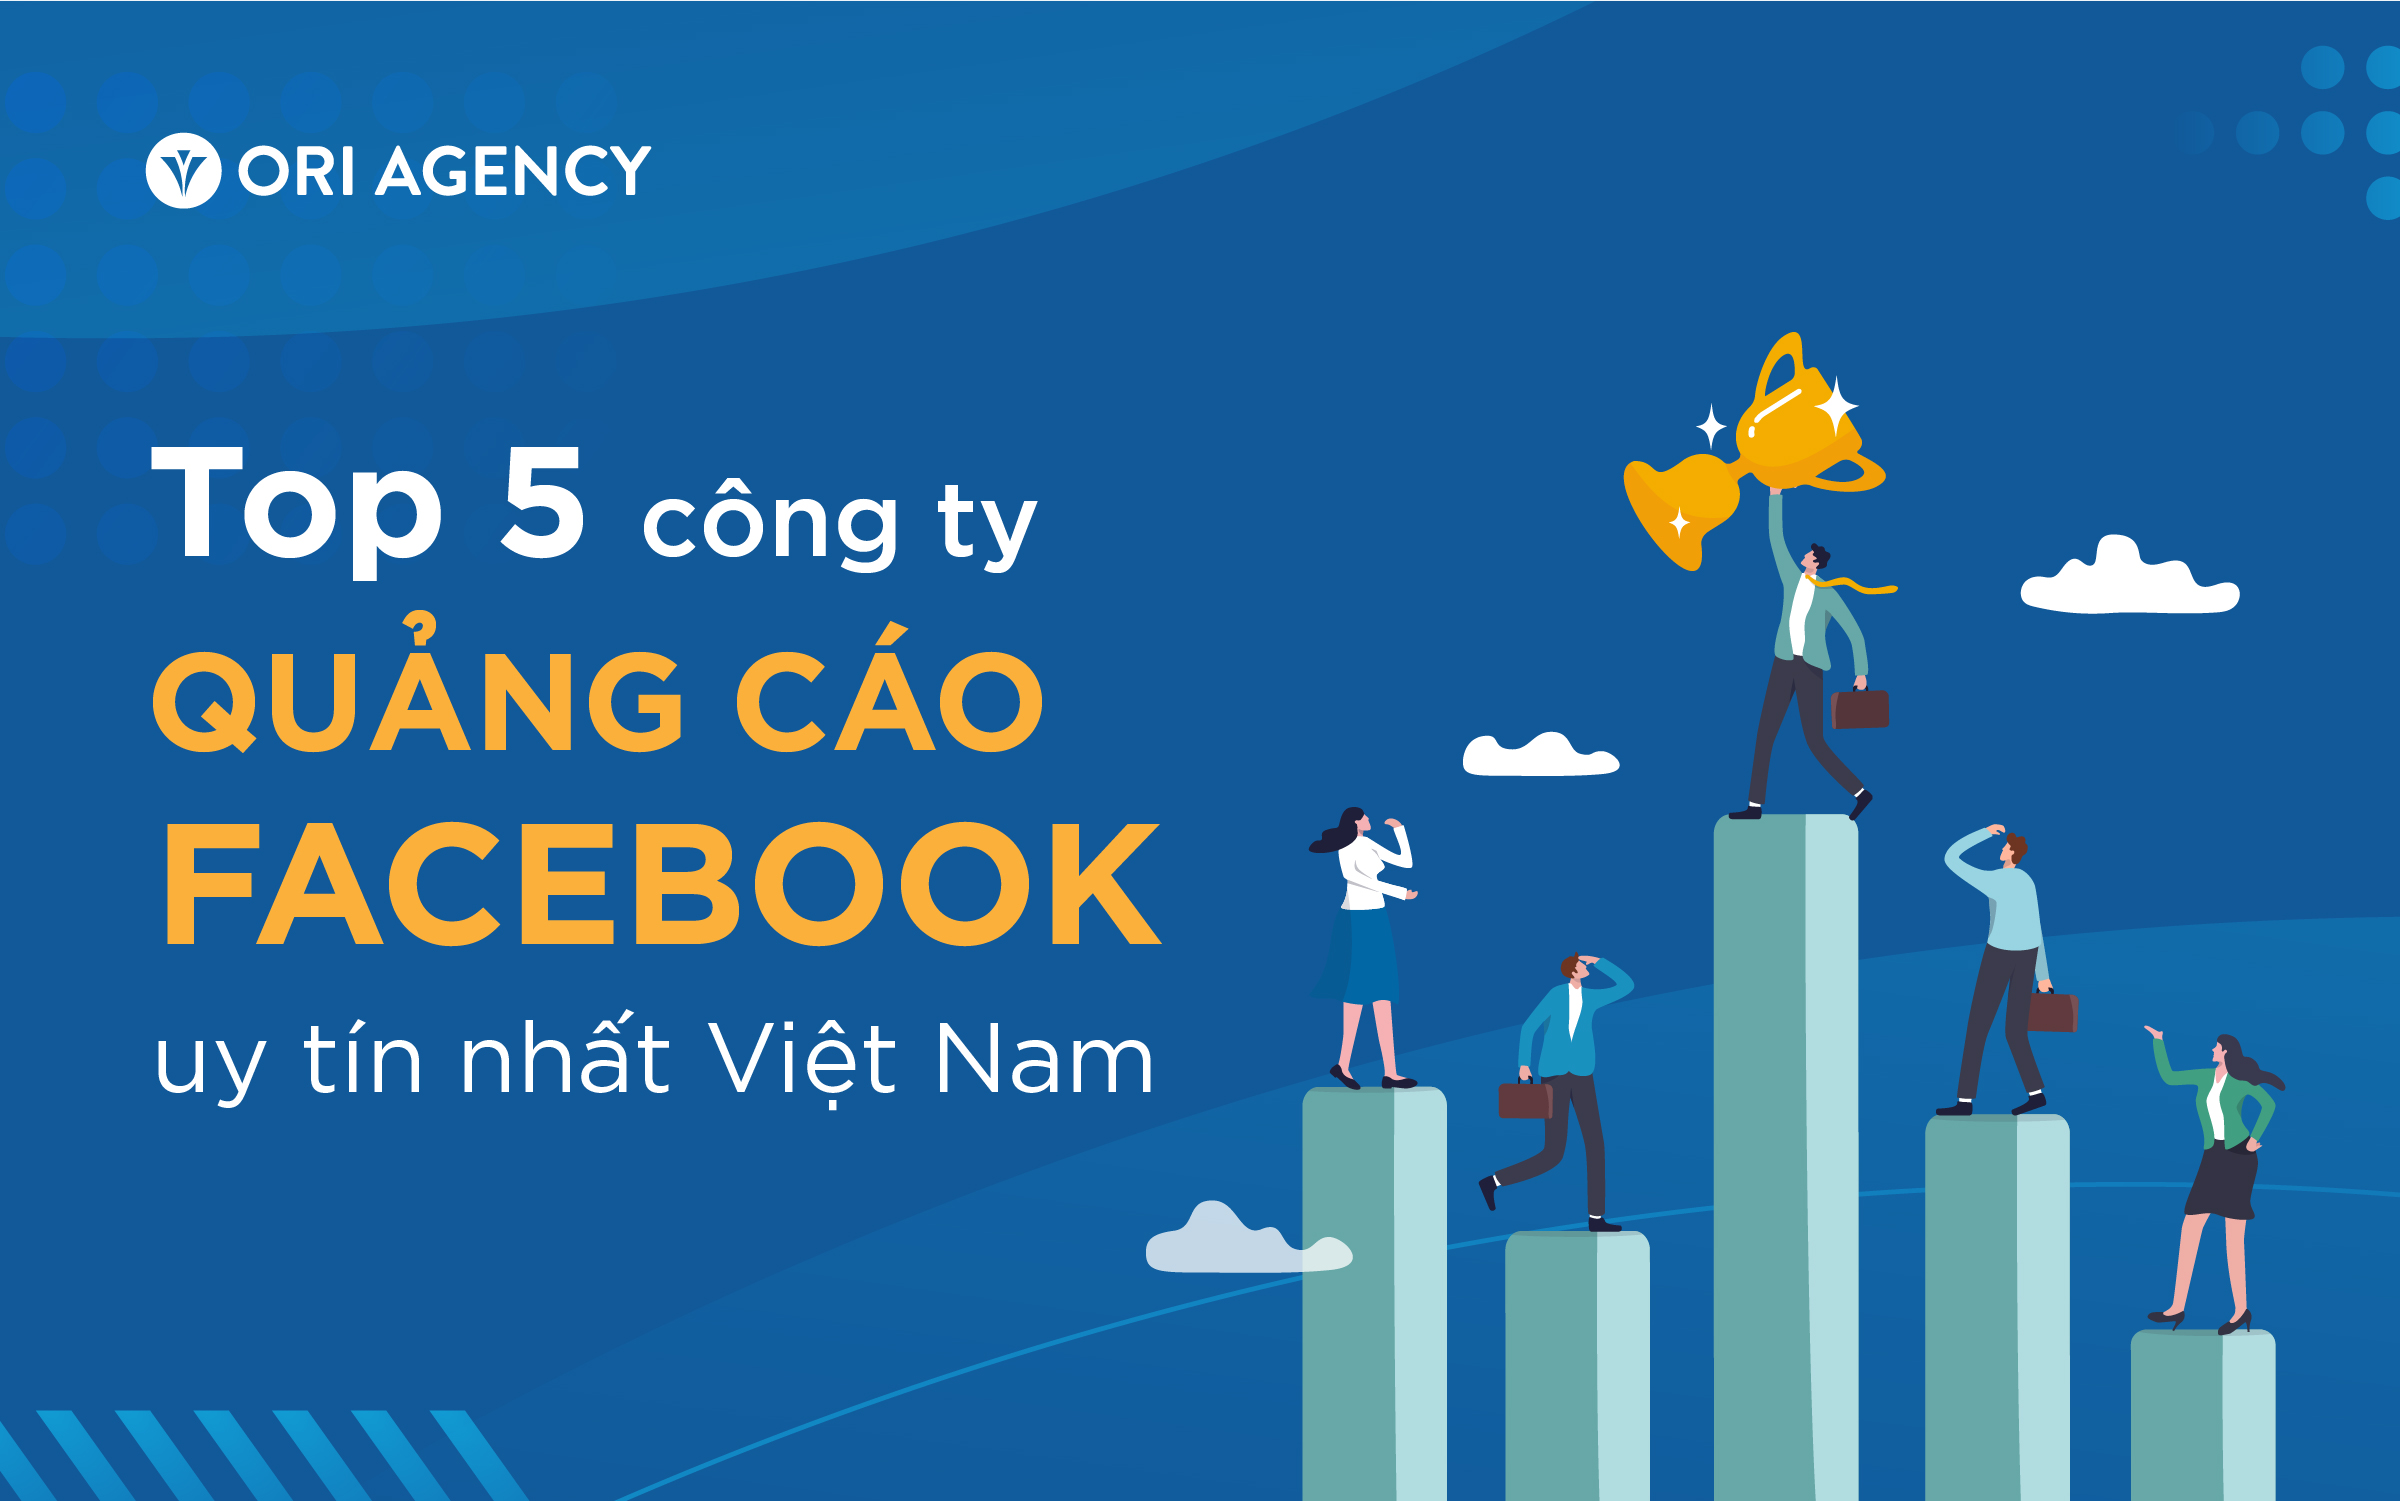 Top 5 công ty quảng cáo Facebook uy tín nhất Việt Nam